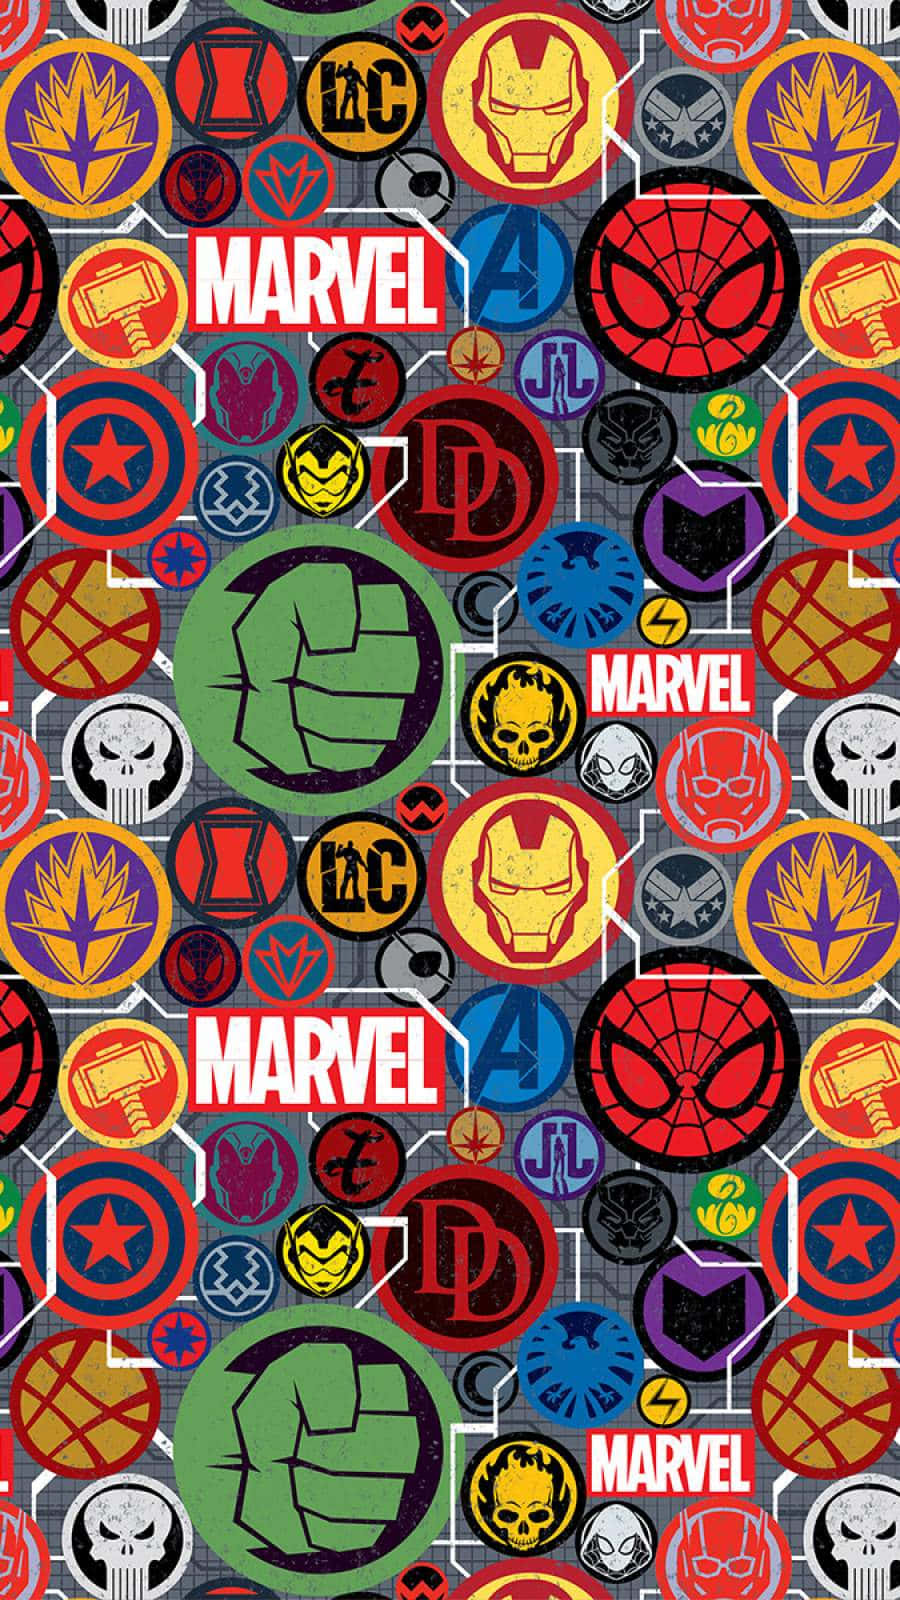 Marvel Art Iphone forener magt og stil af to ikoniske kulturer. Wallpaper